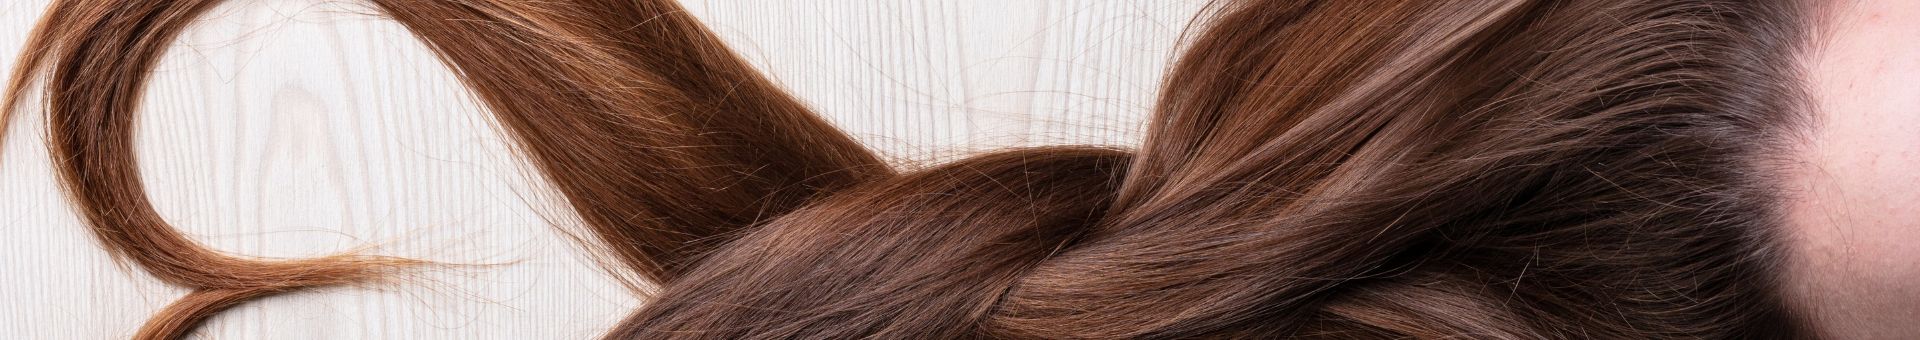 Les secrets d'une chevelure équilibrée : Traiter les problèmes de cheveux gras 1